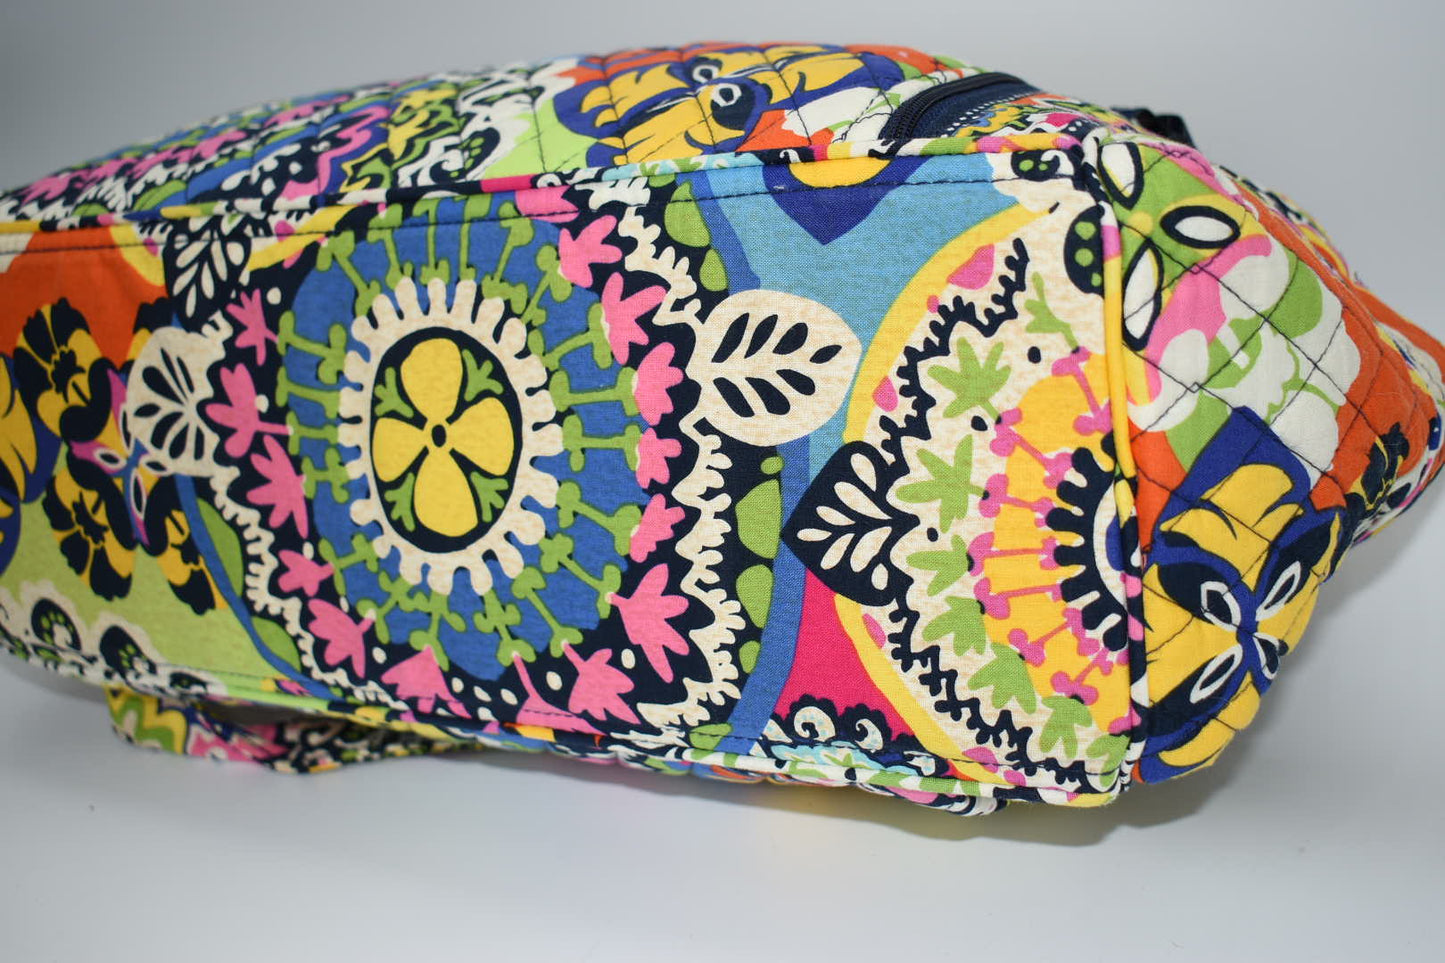 Vera Bradley Make A Change Diaper Bag in Rio Pattern